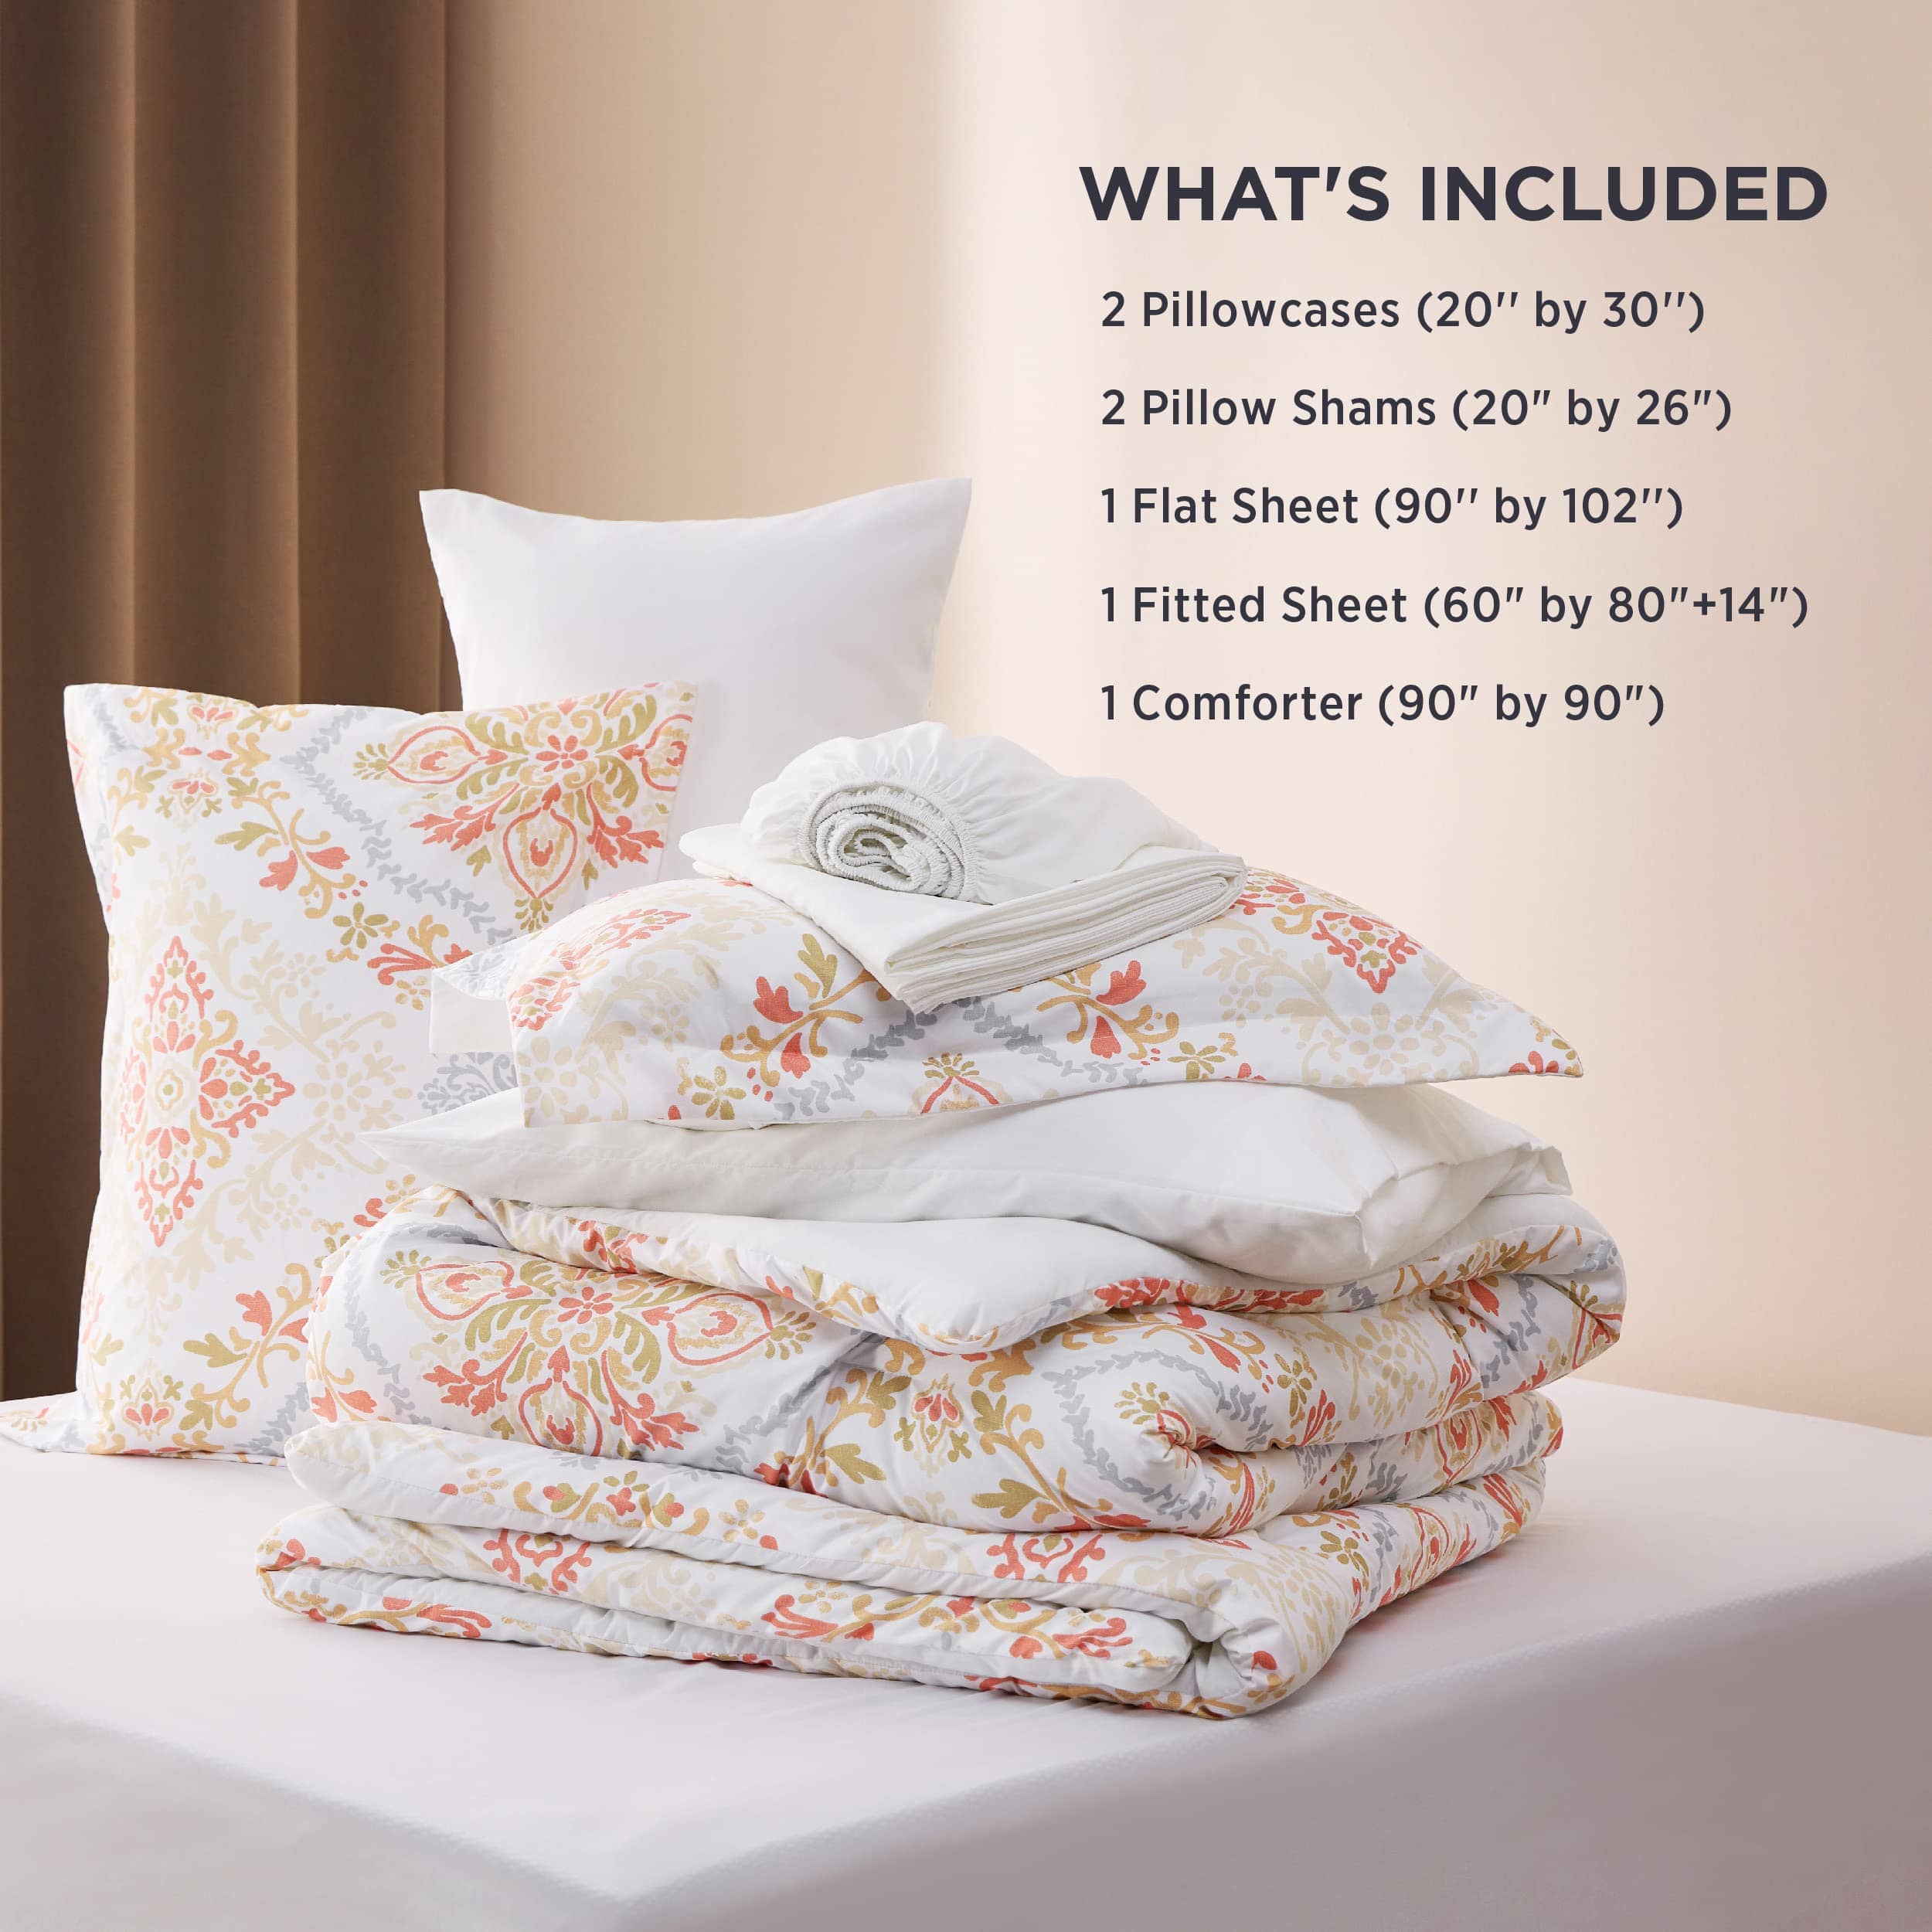 Bedsure Elegant Floral Comforter Sets